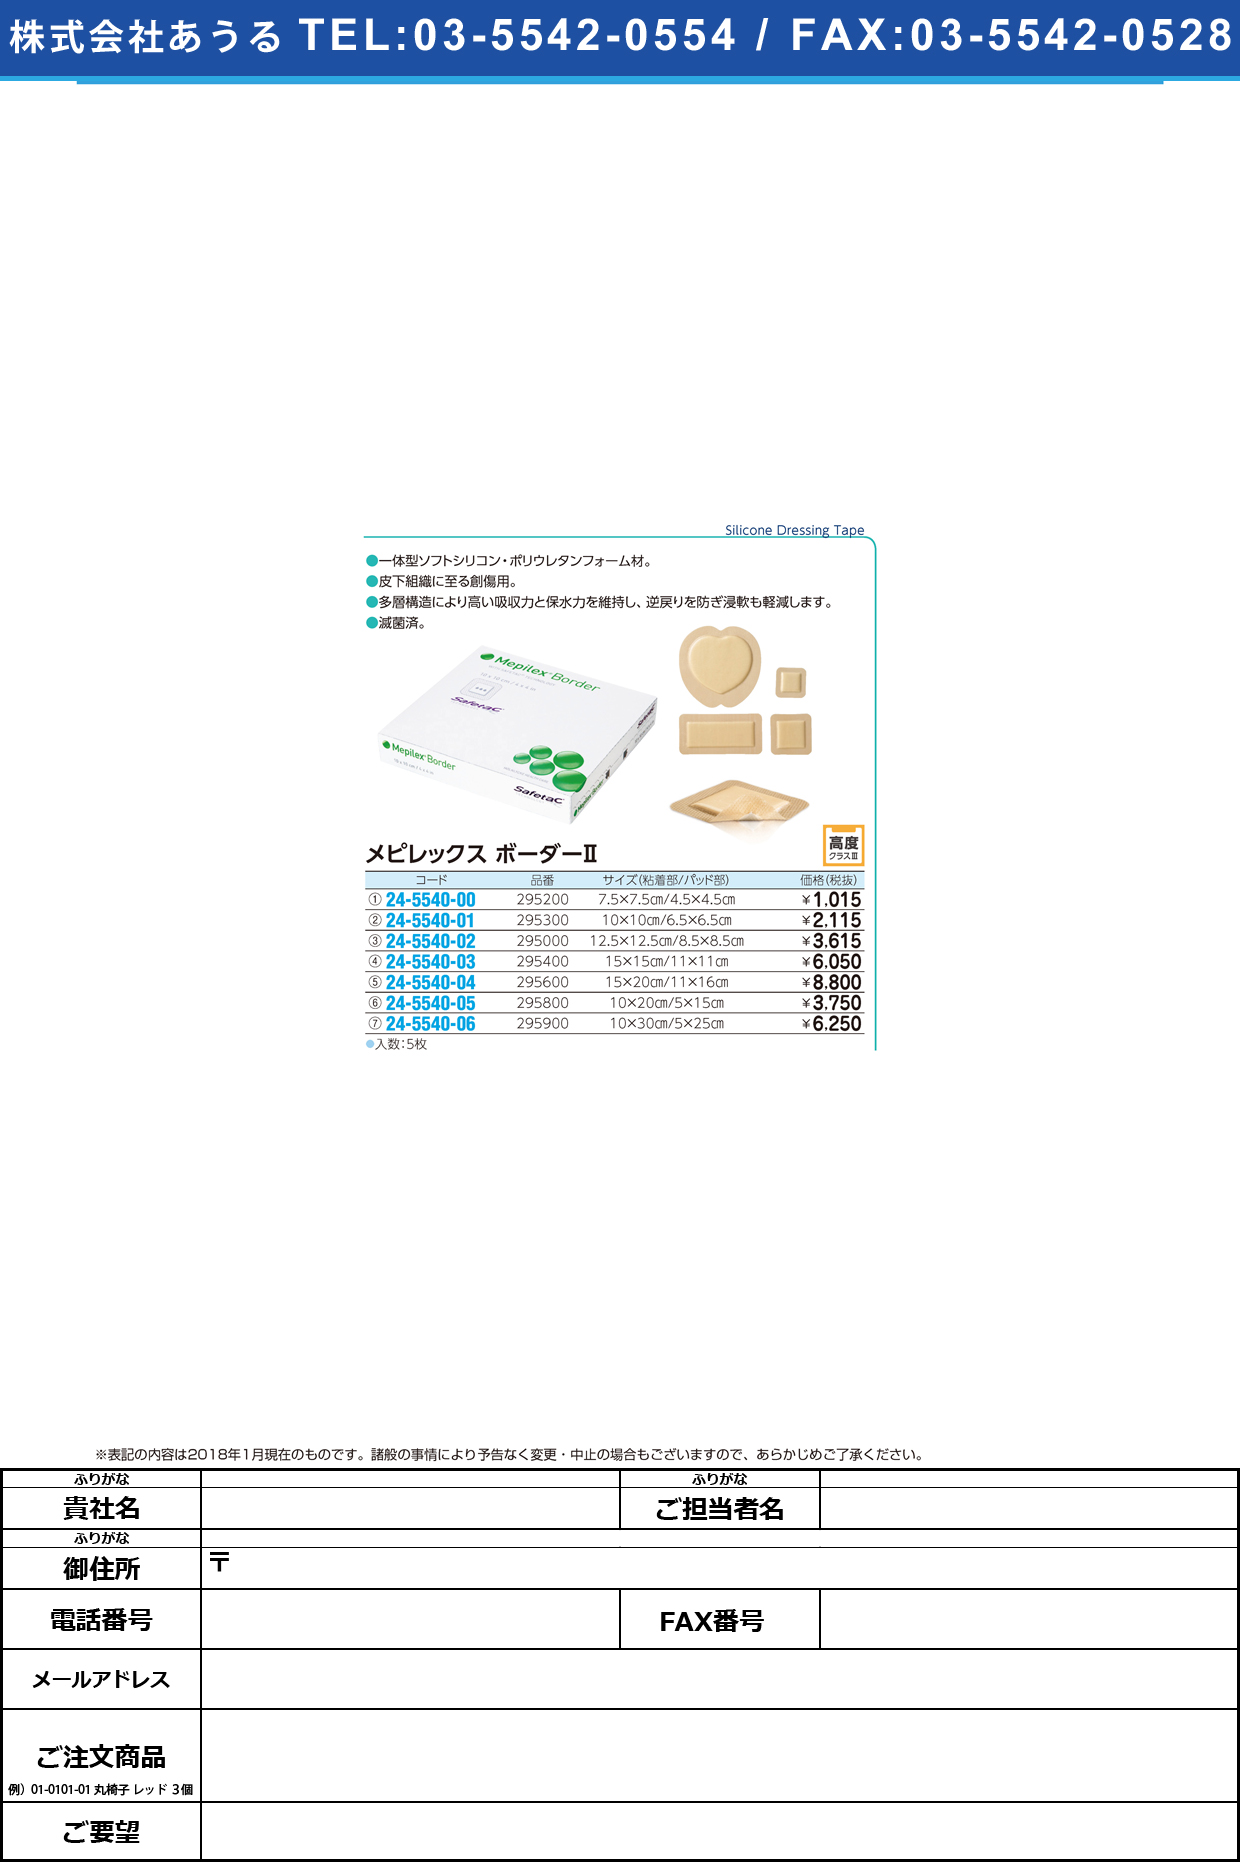 (24-5540-06)メピレックスボーダーⅡ 295900(10.0X30.0)5ｲﾘ ﾒﾋﾟﾚｯｸｽﾎﾞｰﾀﾞｰ2(メンリッケヘルスケア)【1箱単位】【2019年カタログ商品】